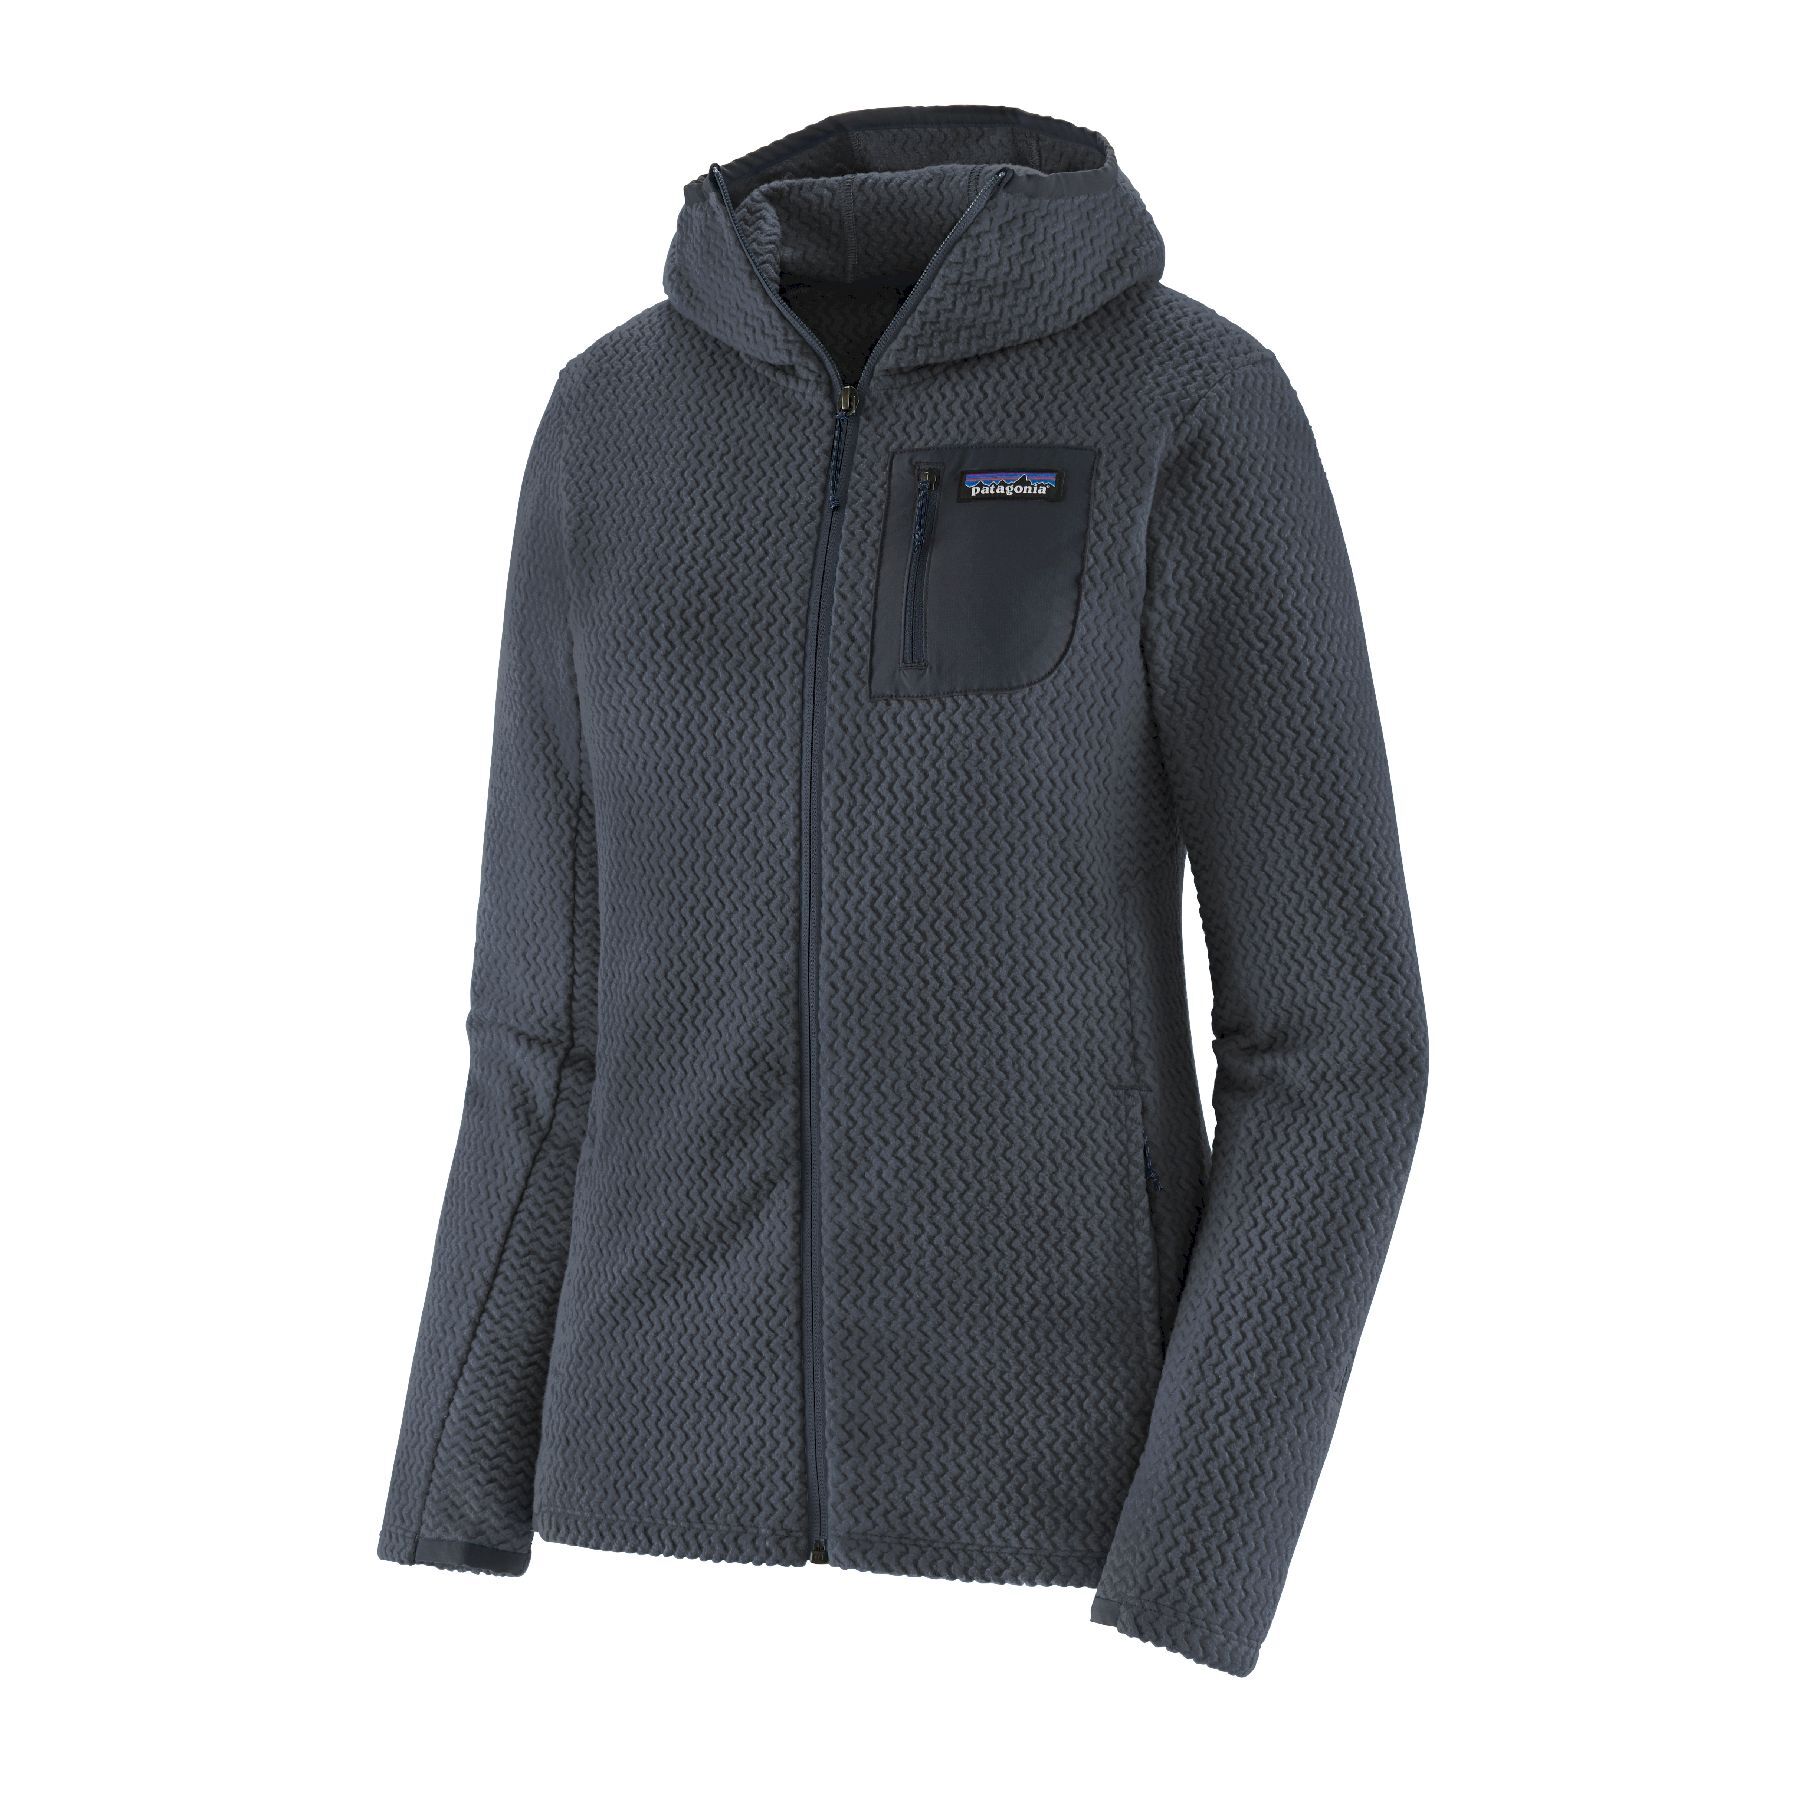 Patagonia R1 Air Full-Zip Hoody - Fleece jacket - Women's